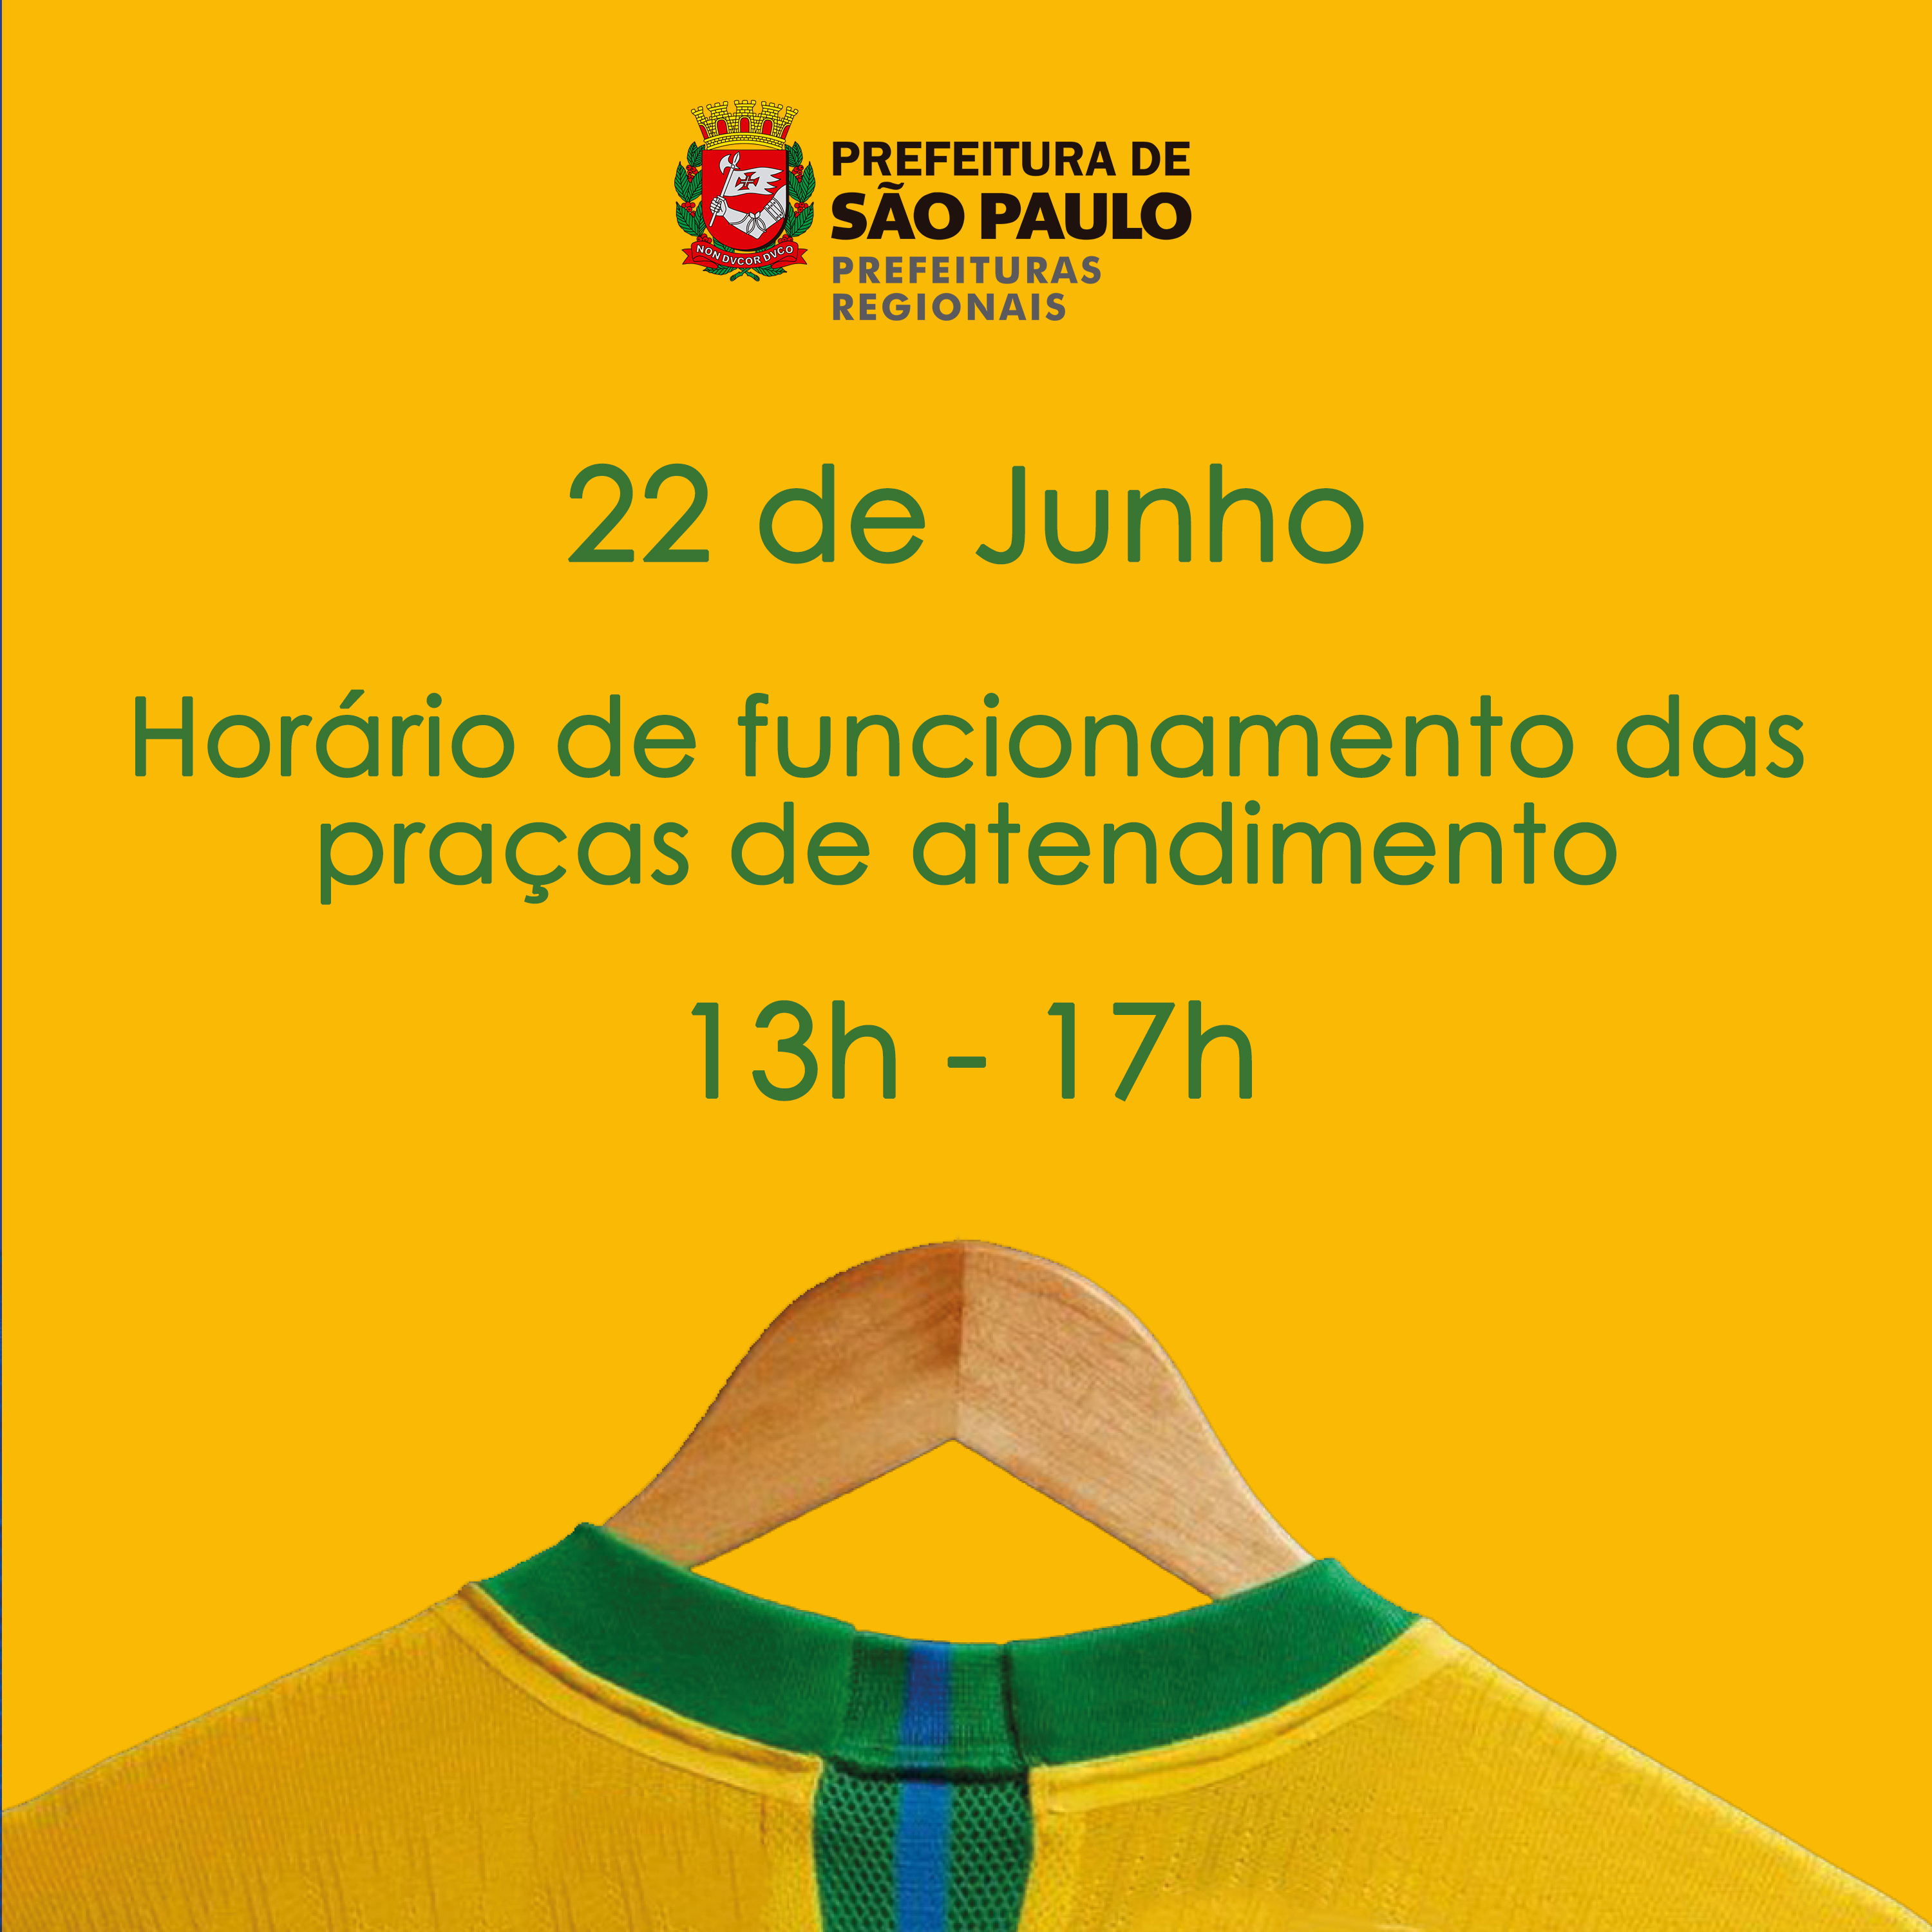 Prefeitura vai funcionar pela manhã em dias de jogos do Brasil na